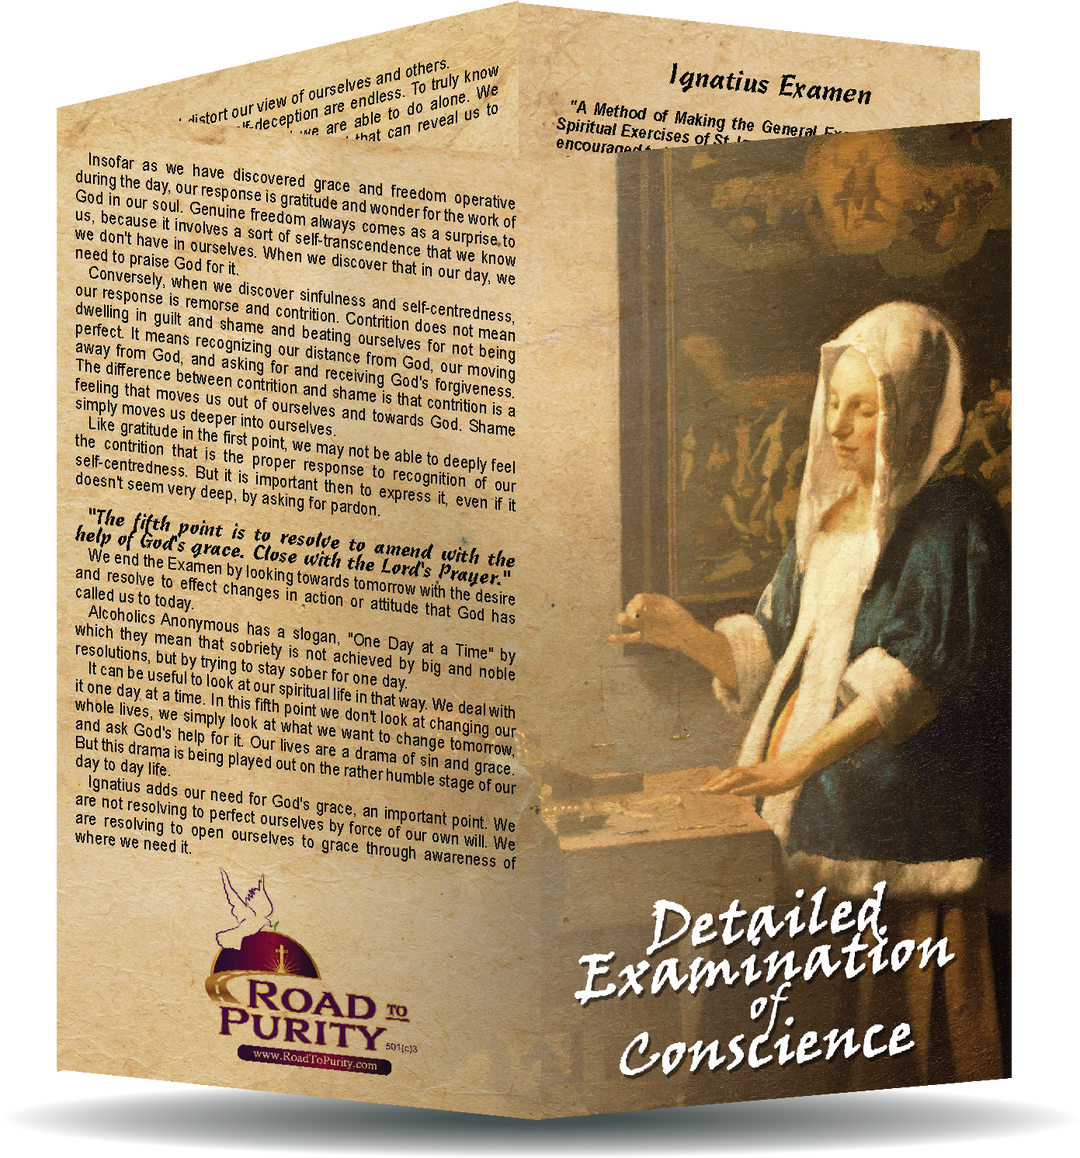 A Detailed Examination of Conscience & Ignatius Examen